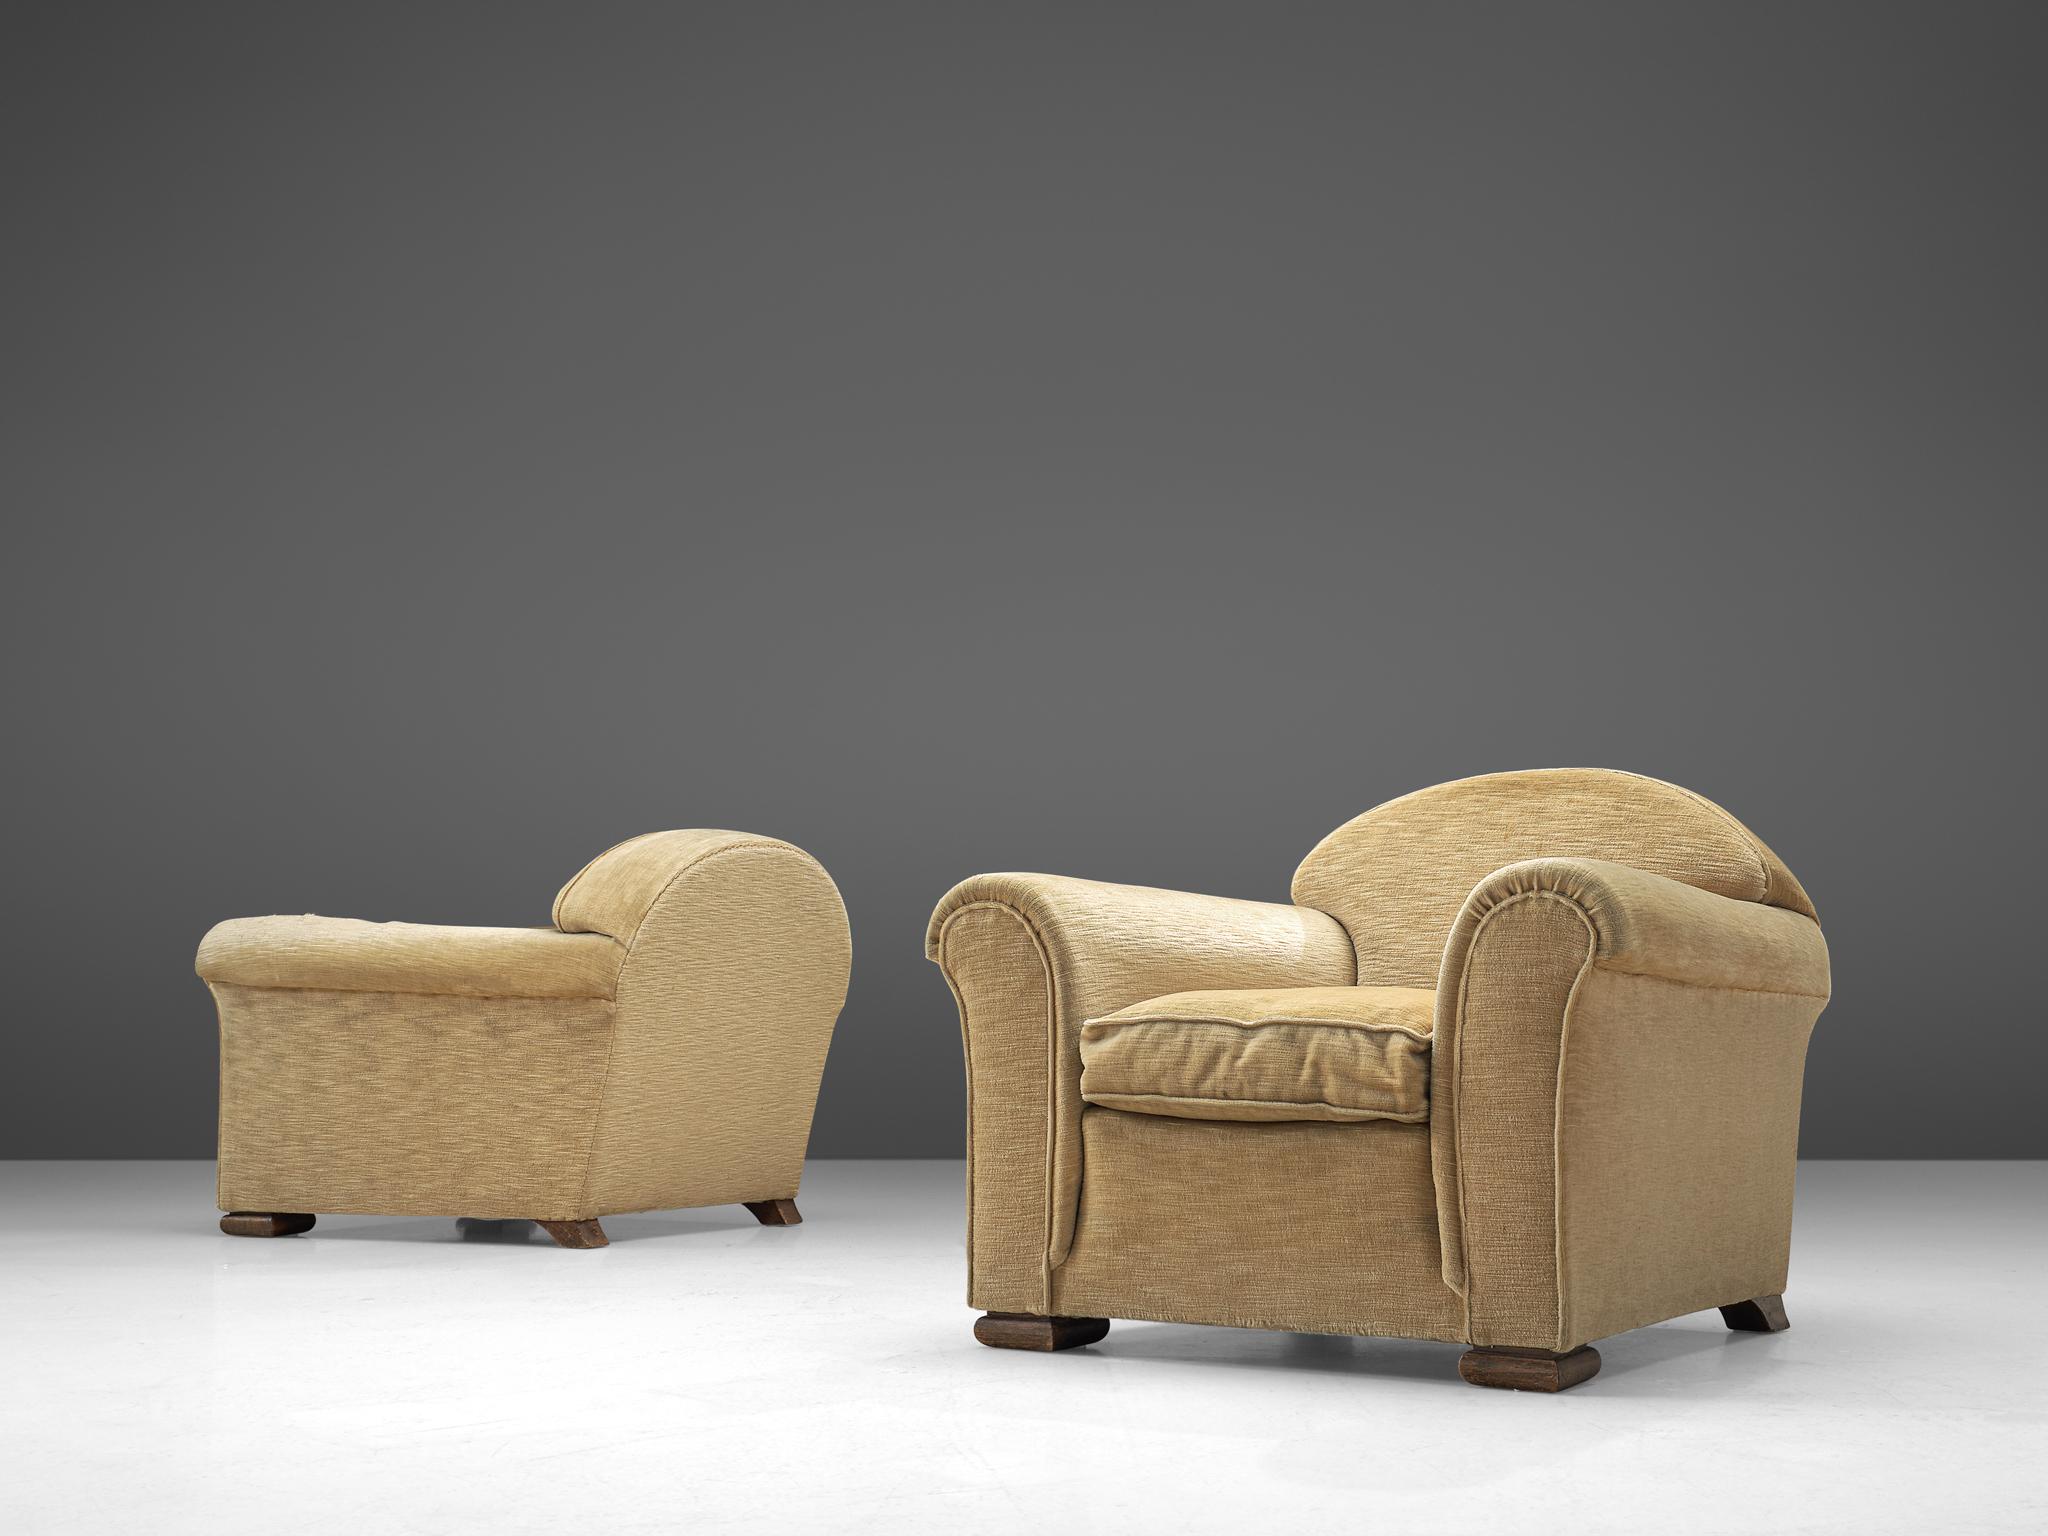 Paire de chaises longues, tissu et chêne, France, années 1940.

Chaises larges et confortables en velours beige doux. Des chaises de salon vraiment extraordinaires avec une assise très profonde et des accoudoirs arrondis dans le style de René